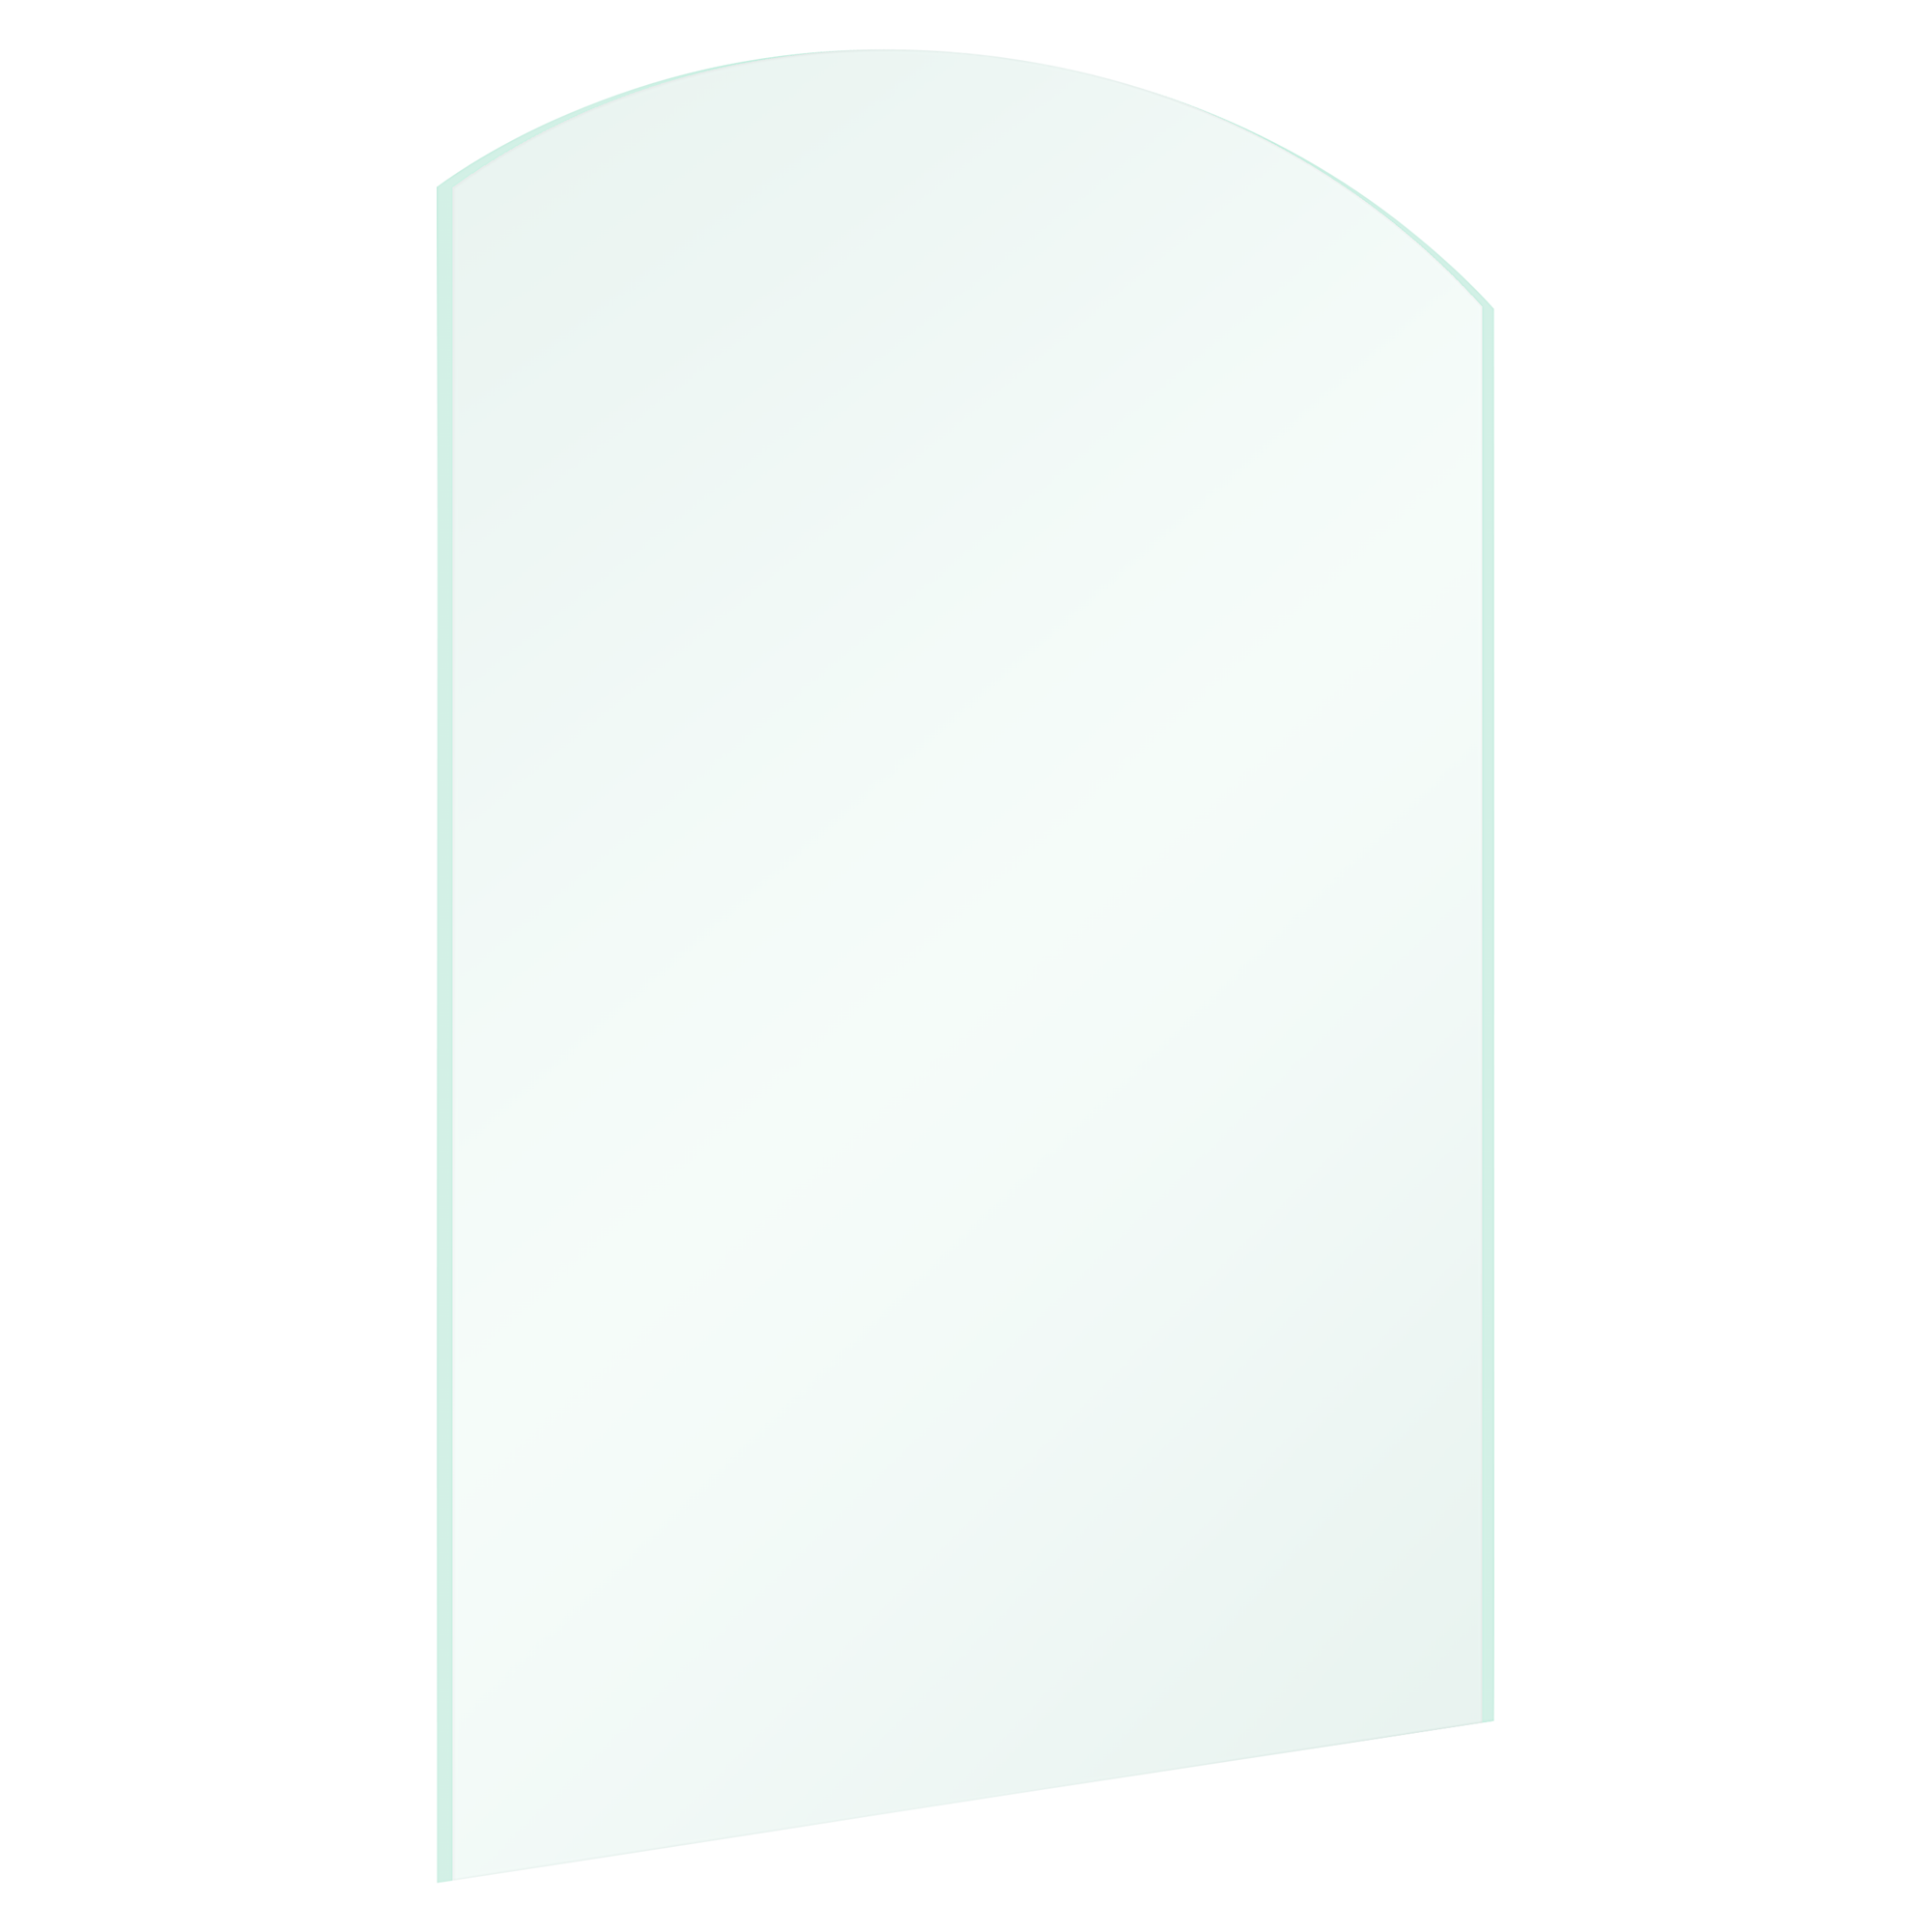 Funkenschutzplatte Bogenform 100 x 120 x 0,8 cm ESG transparent + product picture